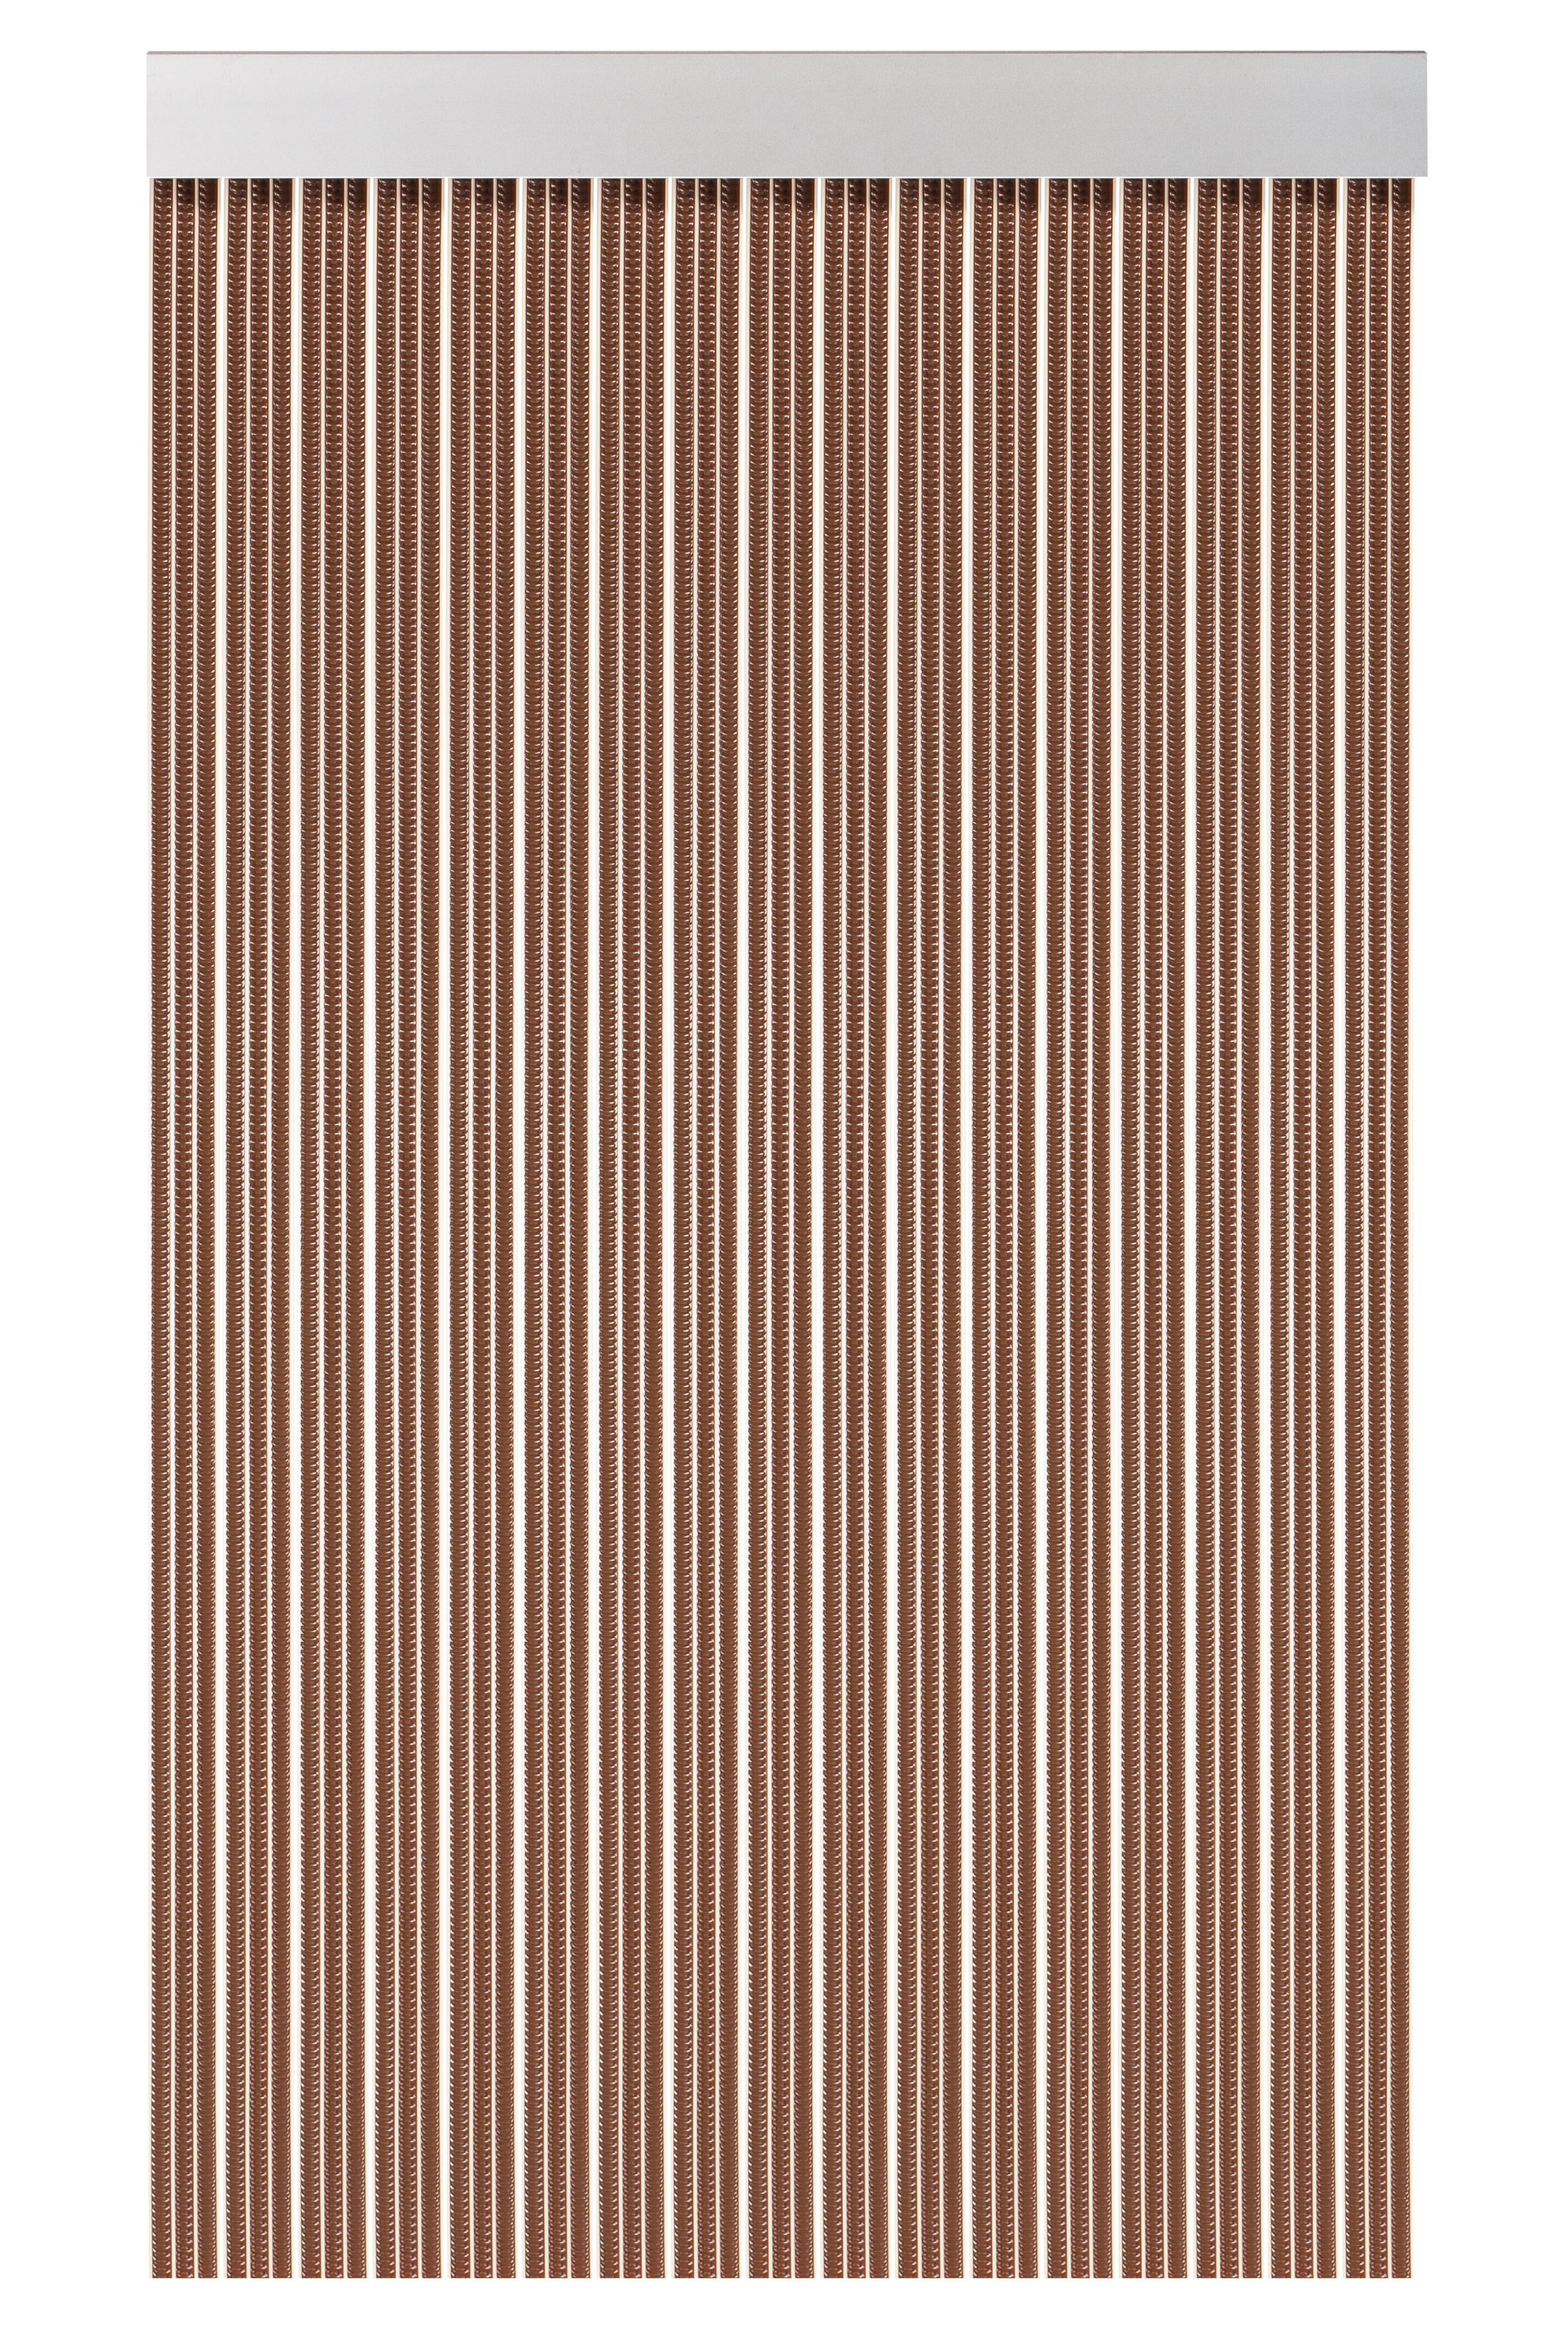 Cortina de puerta lisboa marrón de 90x210 cm